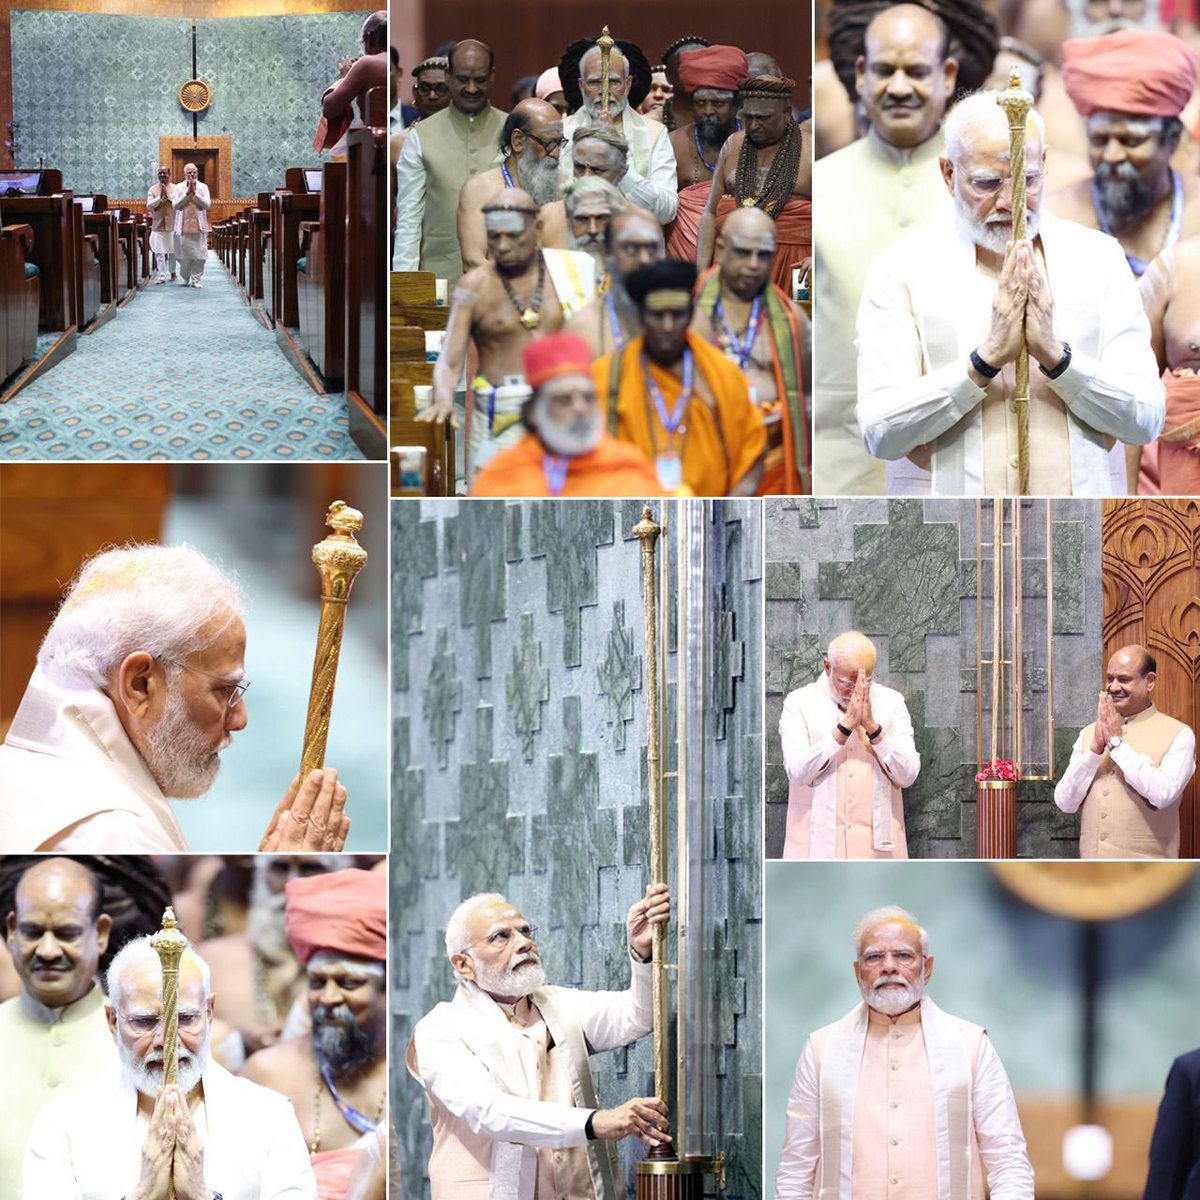 सम्मान, लोकतंत्र के मंदिर का!

@PMOIndia #SengolOfIndia
#Sengol #SengolInParliament
#MyParliamentMyPride